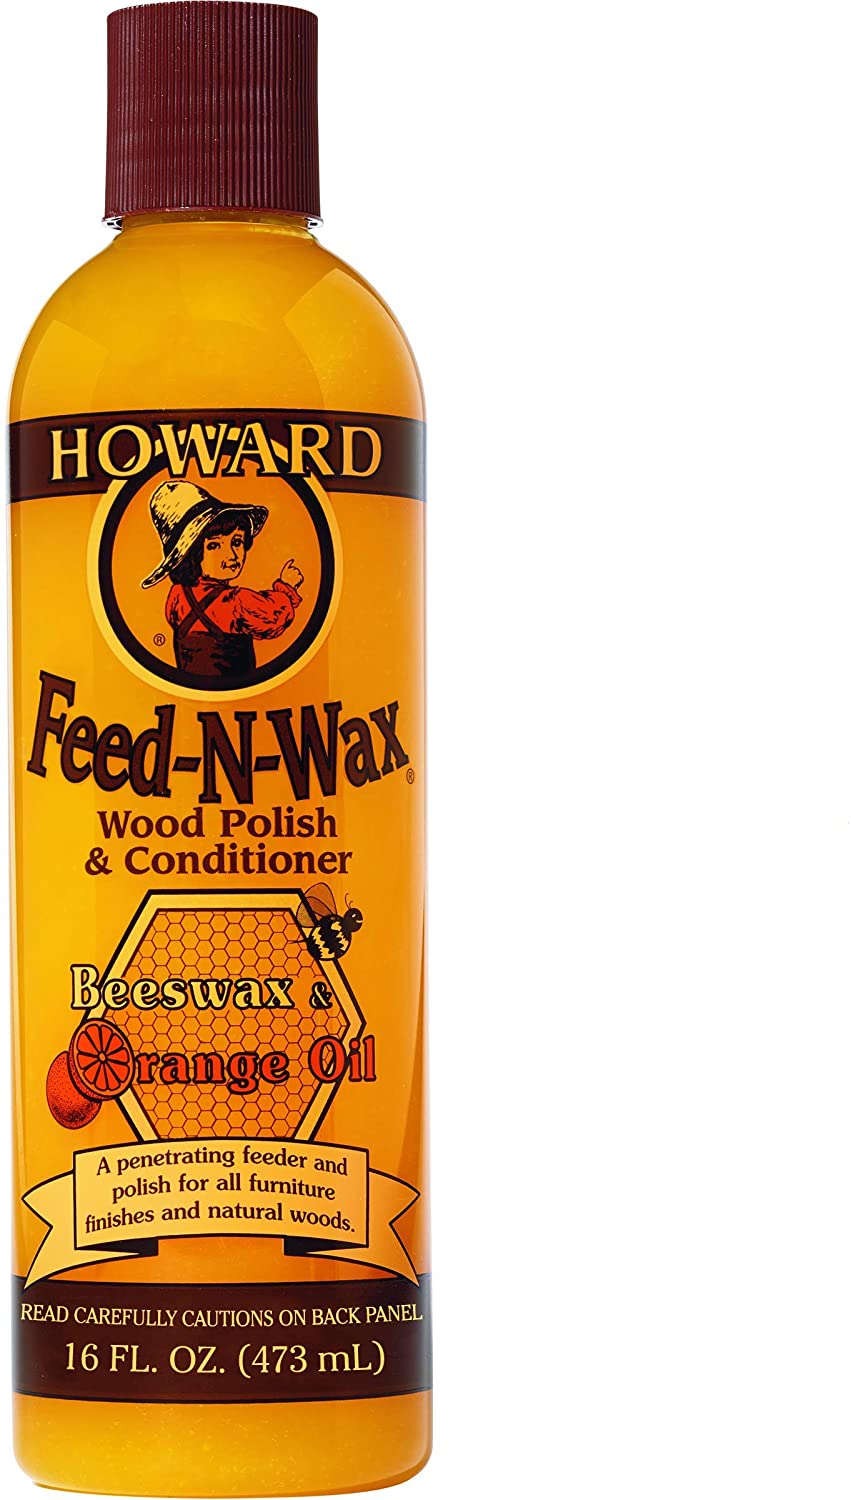 Howard Feed-N-Wax 